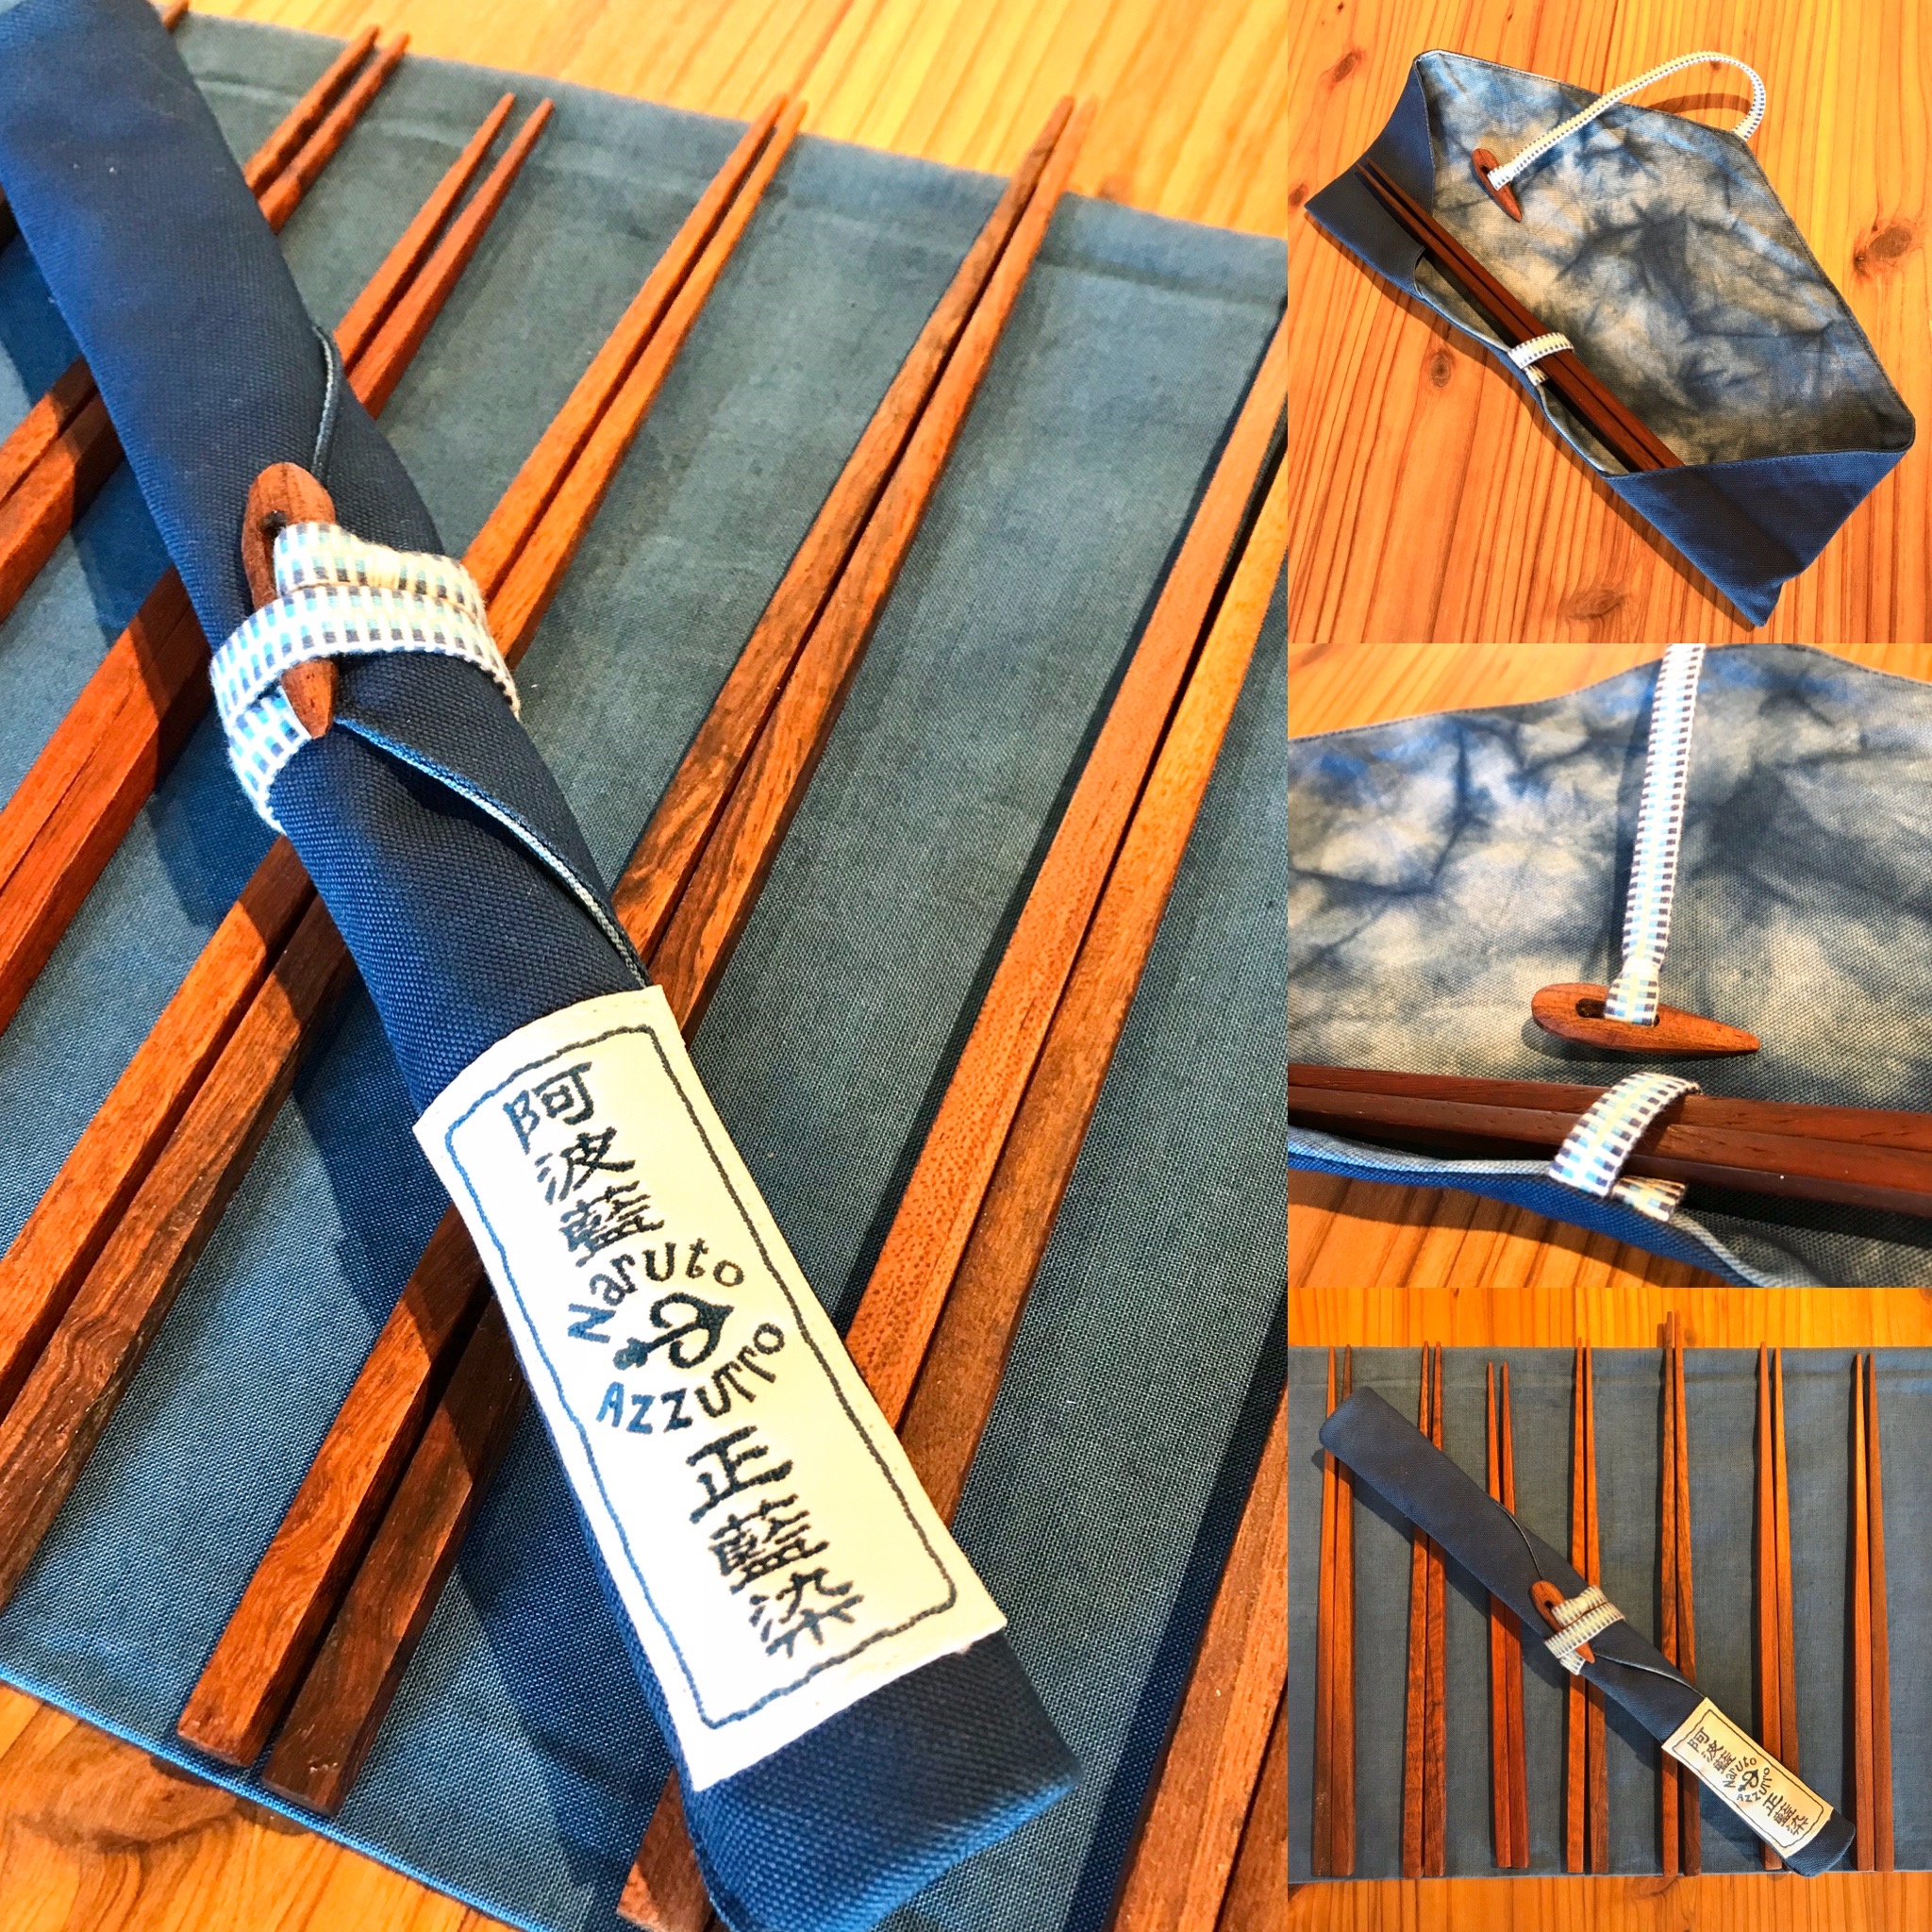 高級木材「かりん」のお箸と藍で染めた箸袋のコラボ企画です